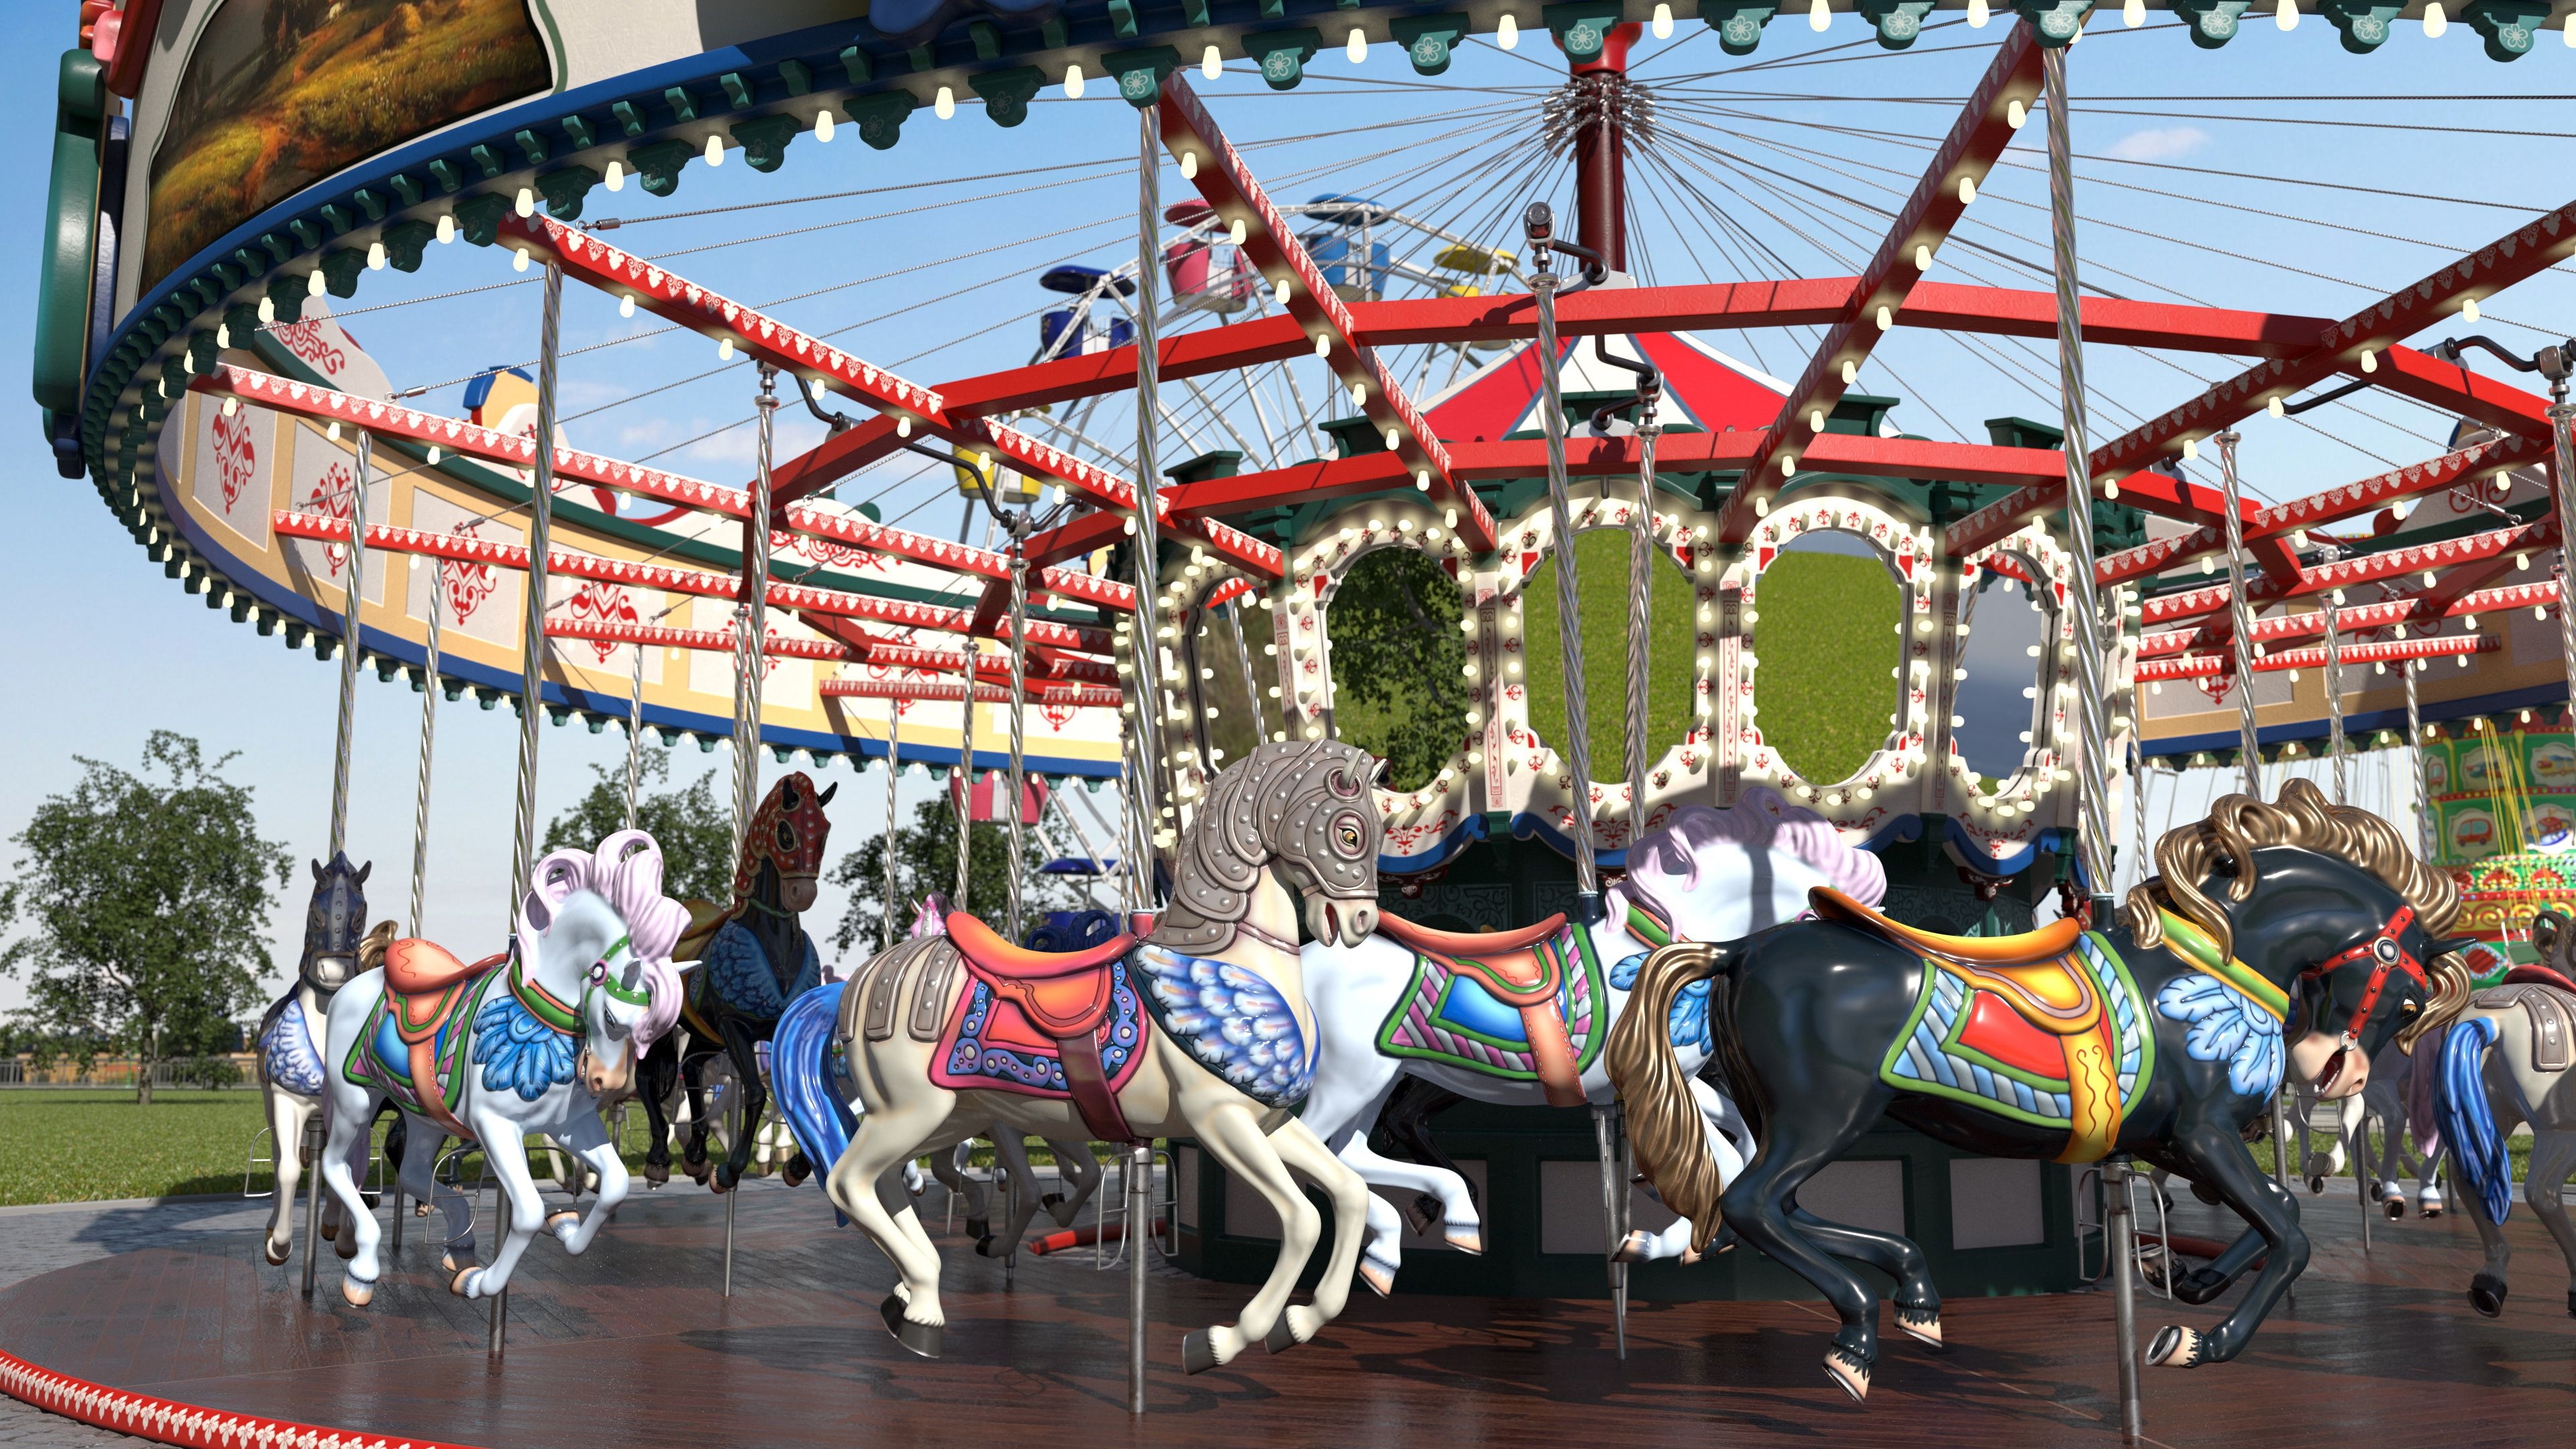 Amusement park carousel, 3D model, Architecture, Carousel horses, 3840x2160 4K Desktop